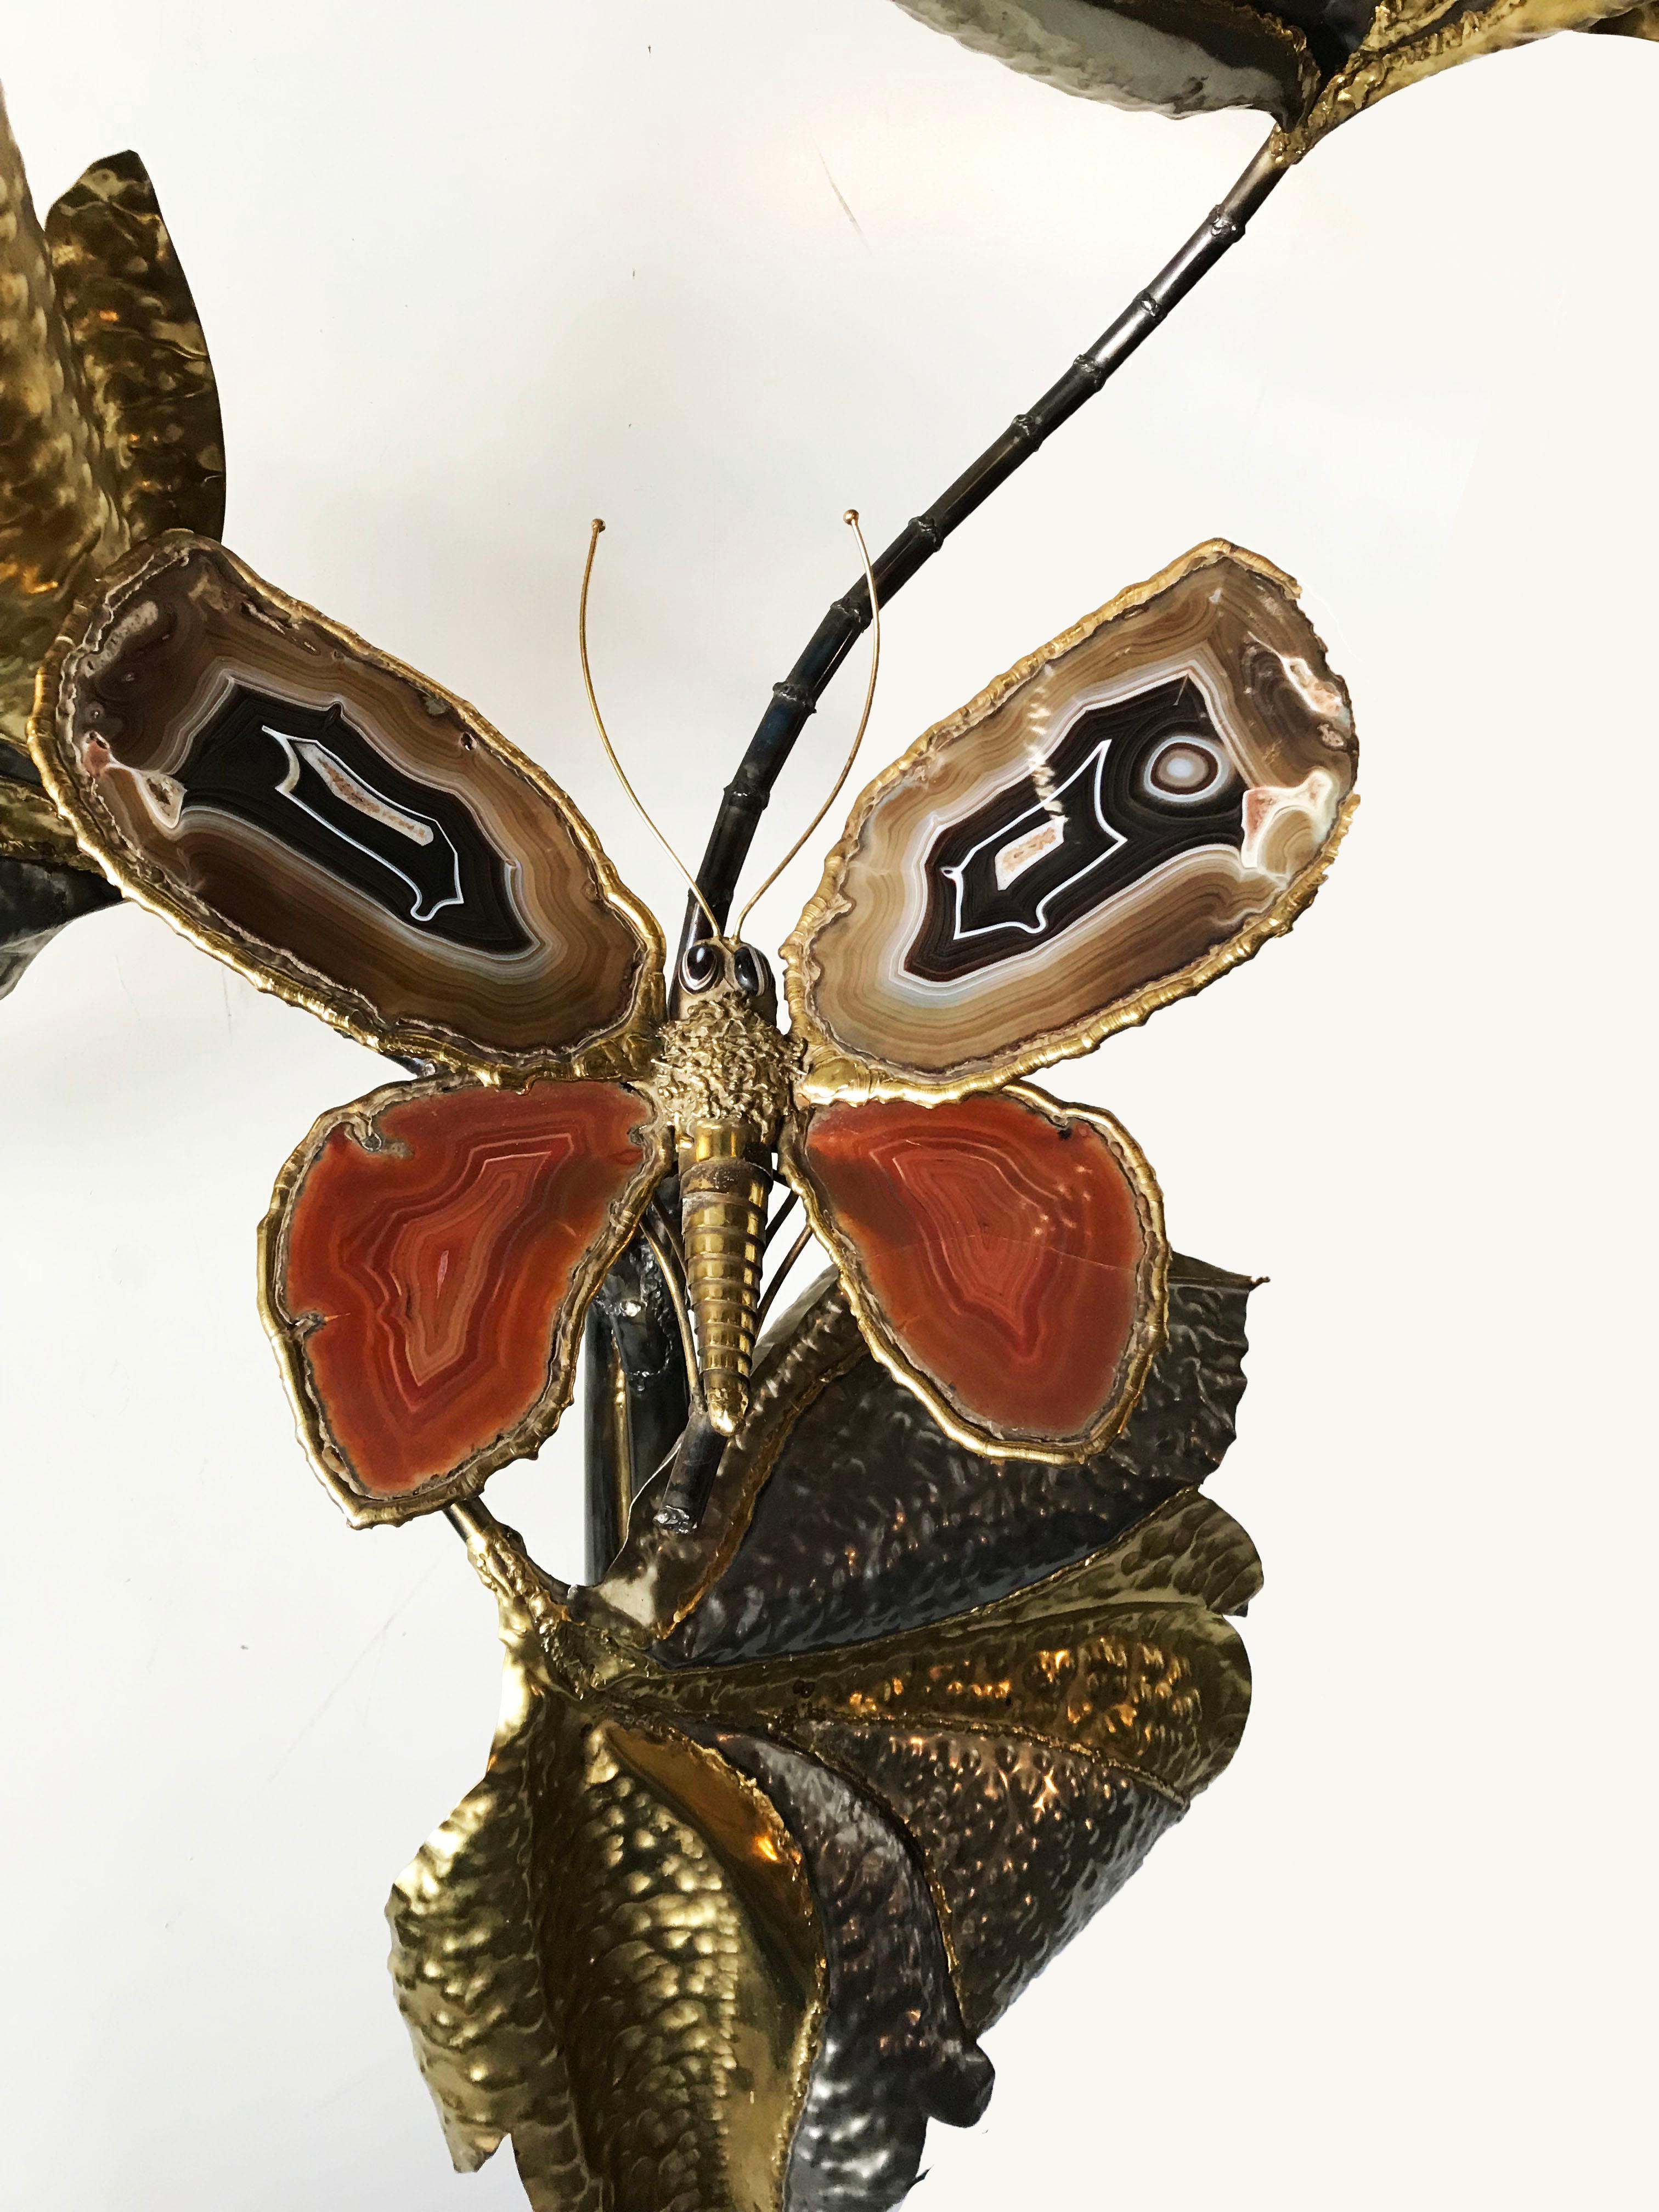 Prächtige Stehleuchte von Isabelle und Richard Faure für Maison Honore, die einen Schmetterling mit Achatflügeln auf einem Baum aus Messing und Bronze darstellt.
Acht Lichter, vier für den Schmetterling und vier für den Baum.